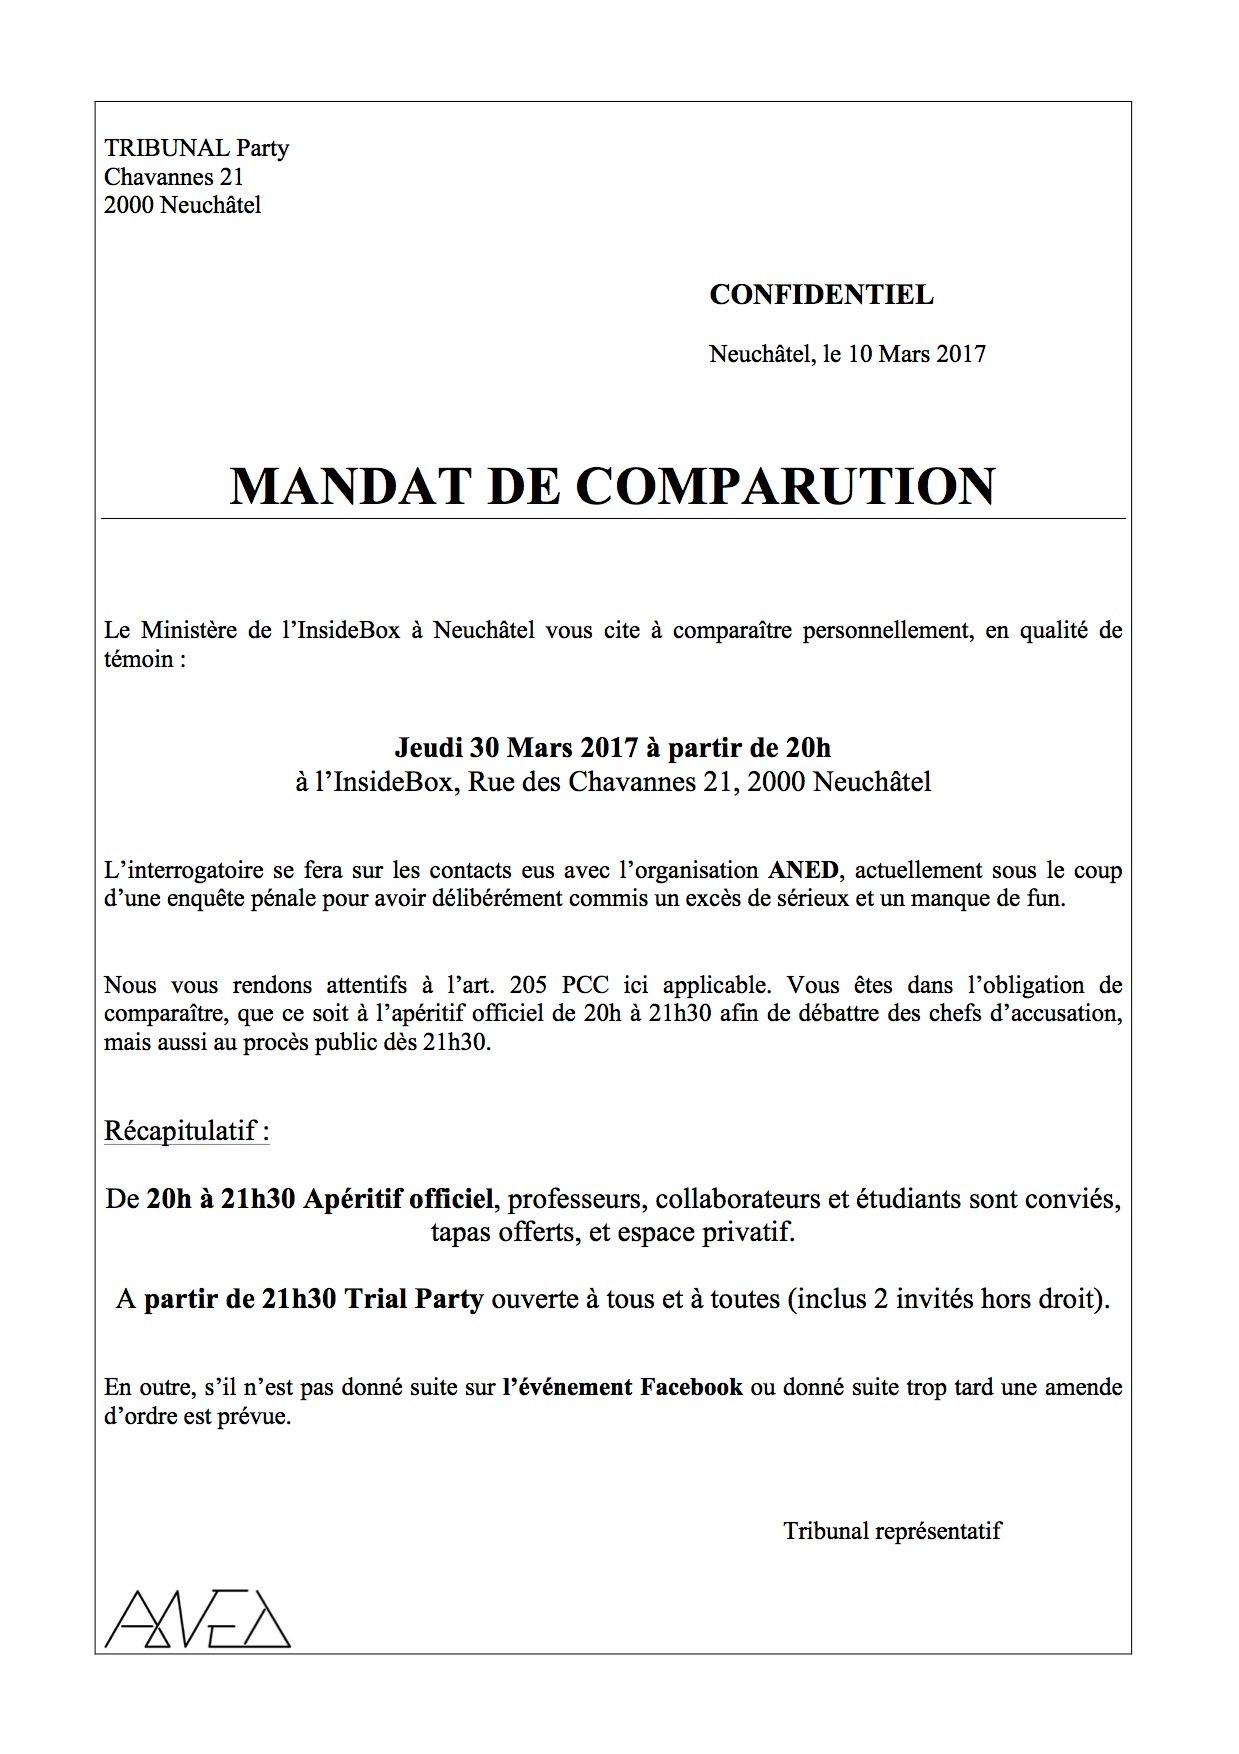 MANDAT DE COMPARUTION.png